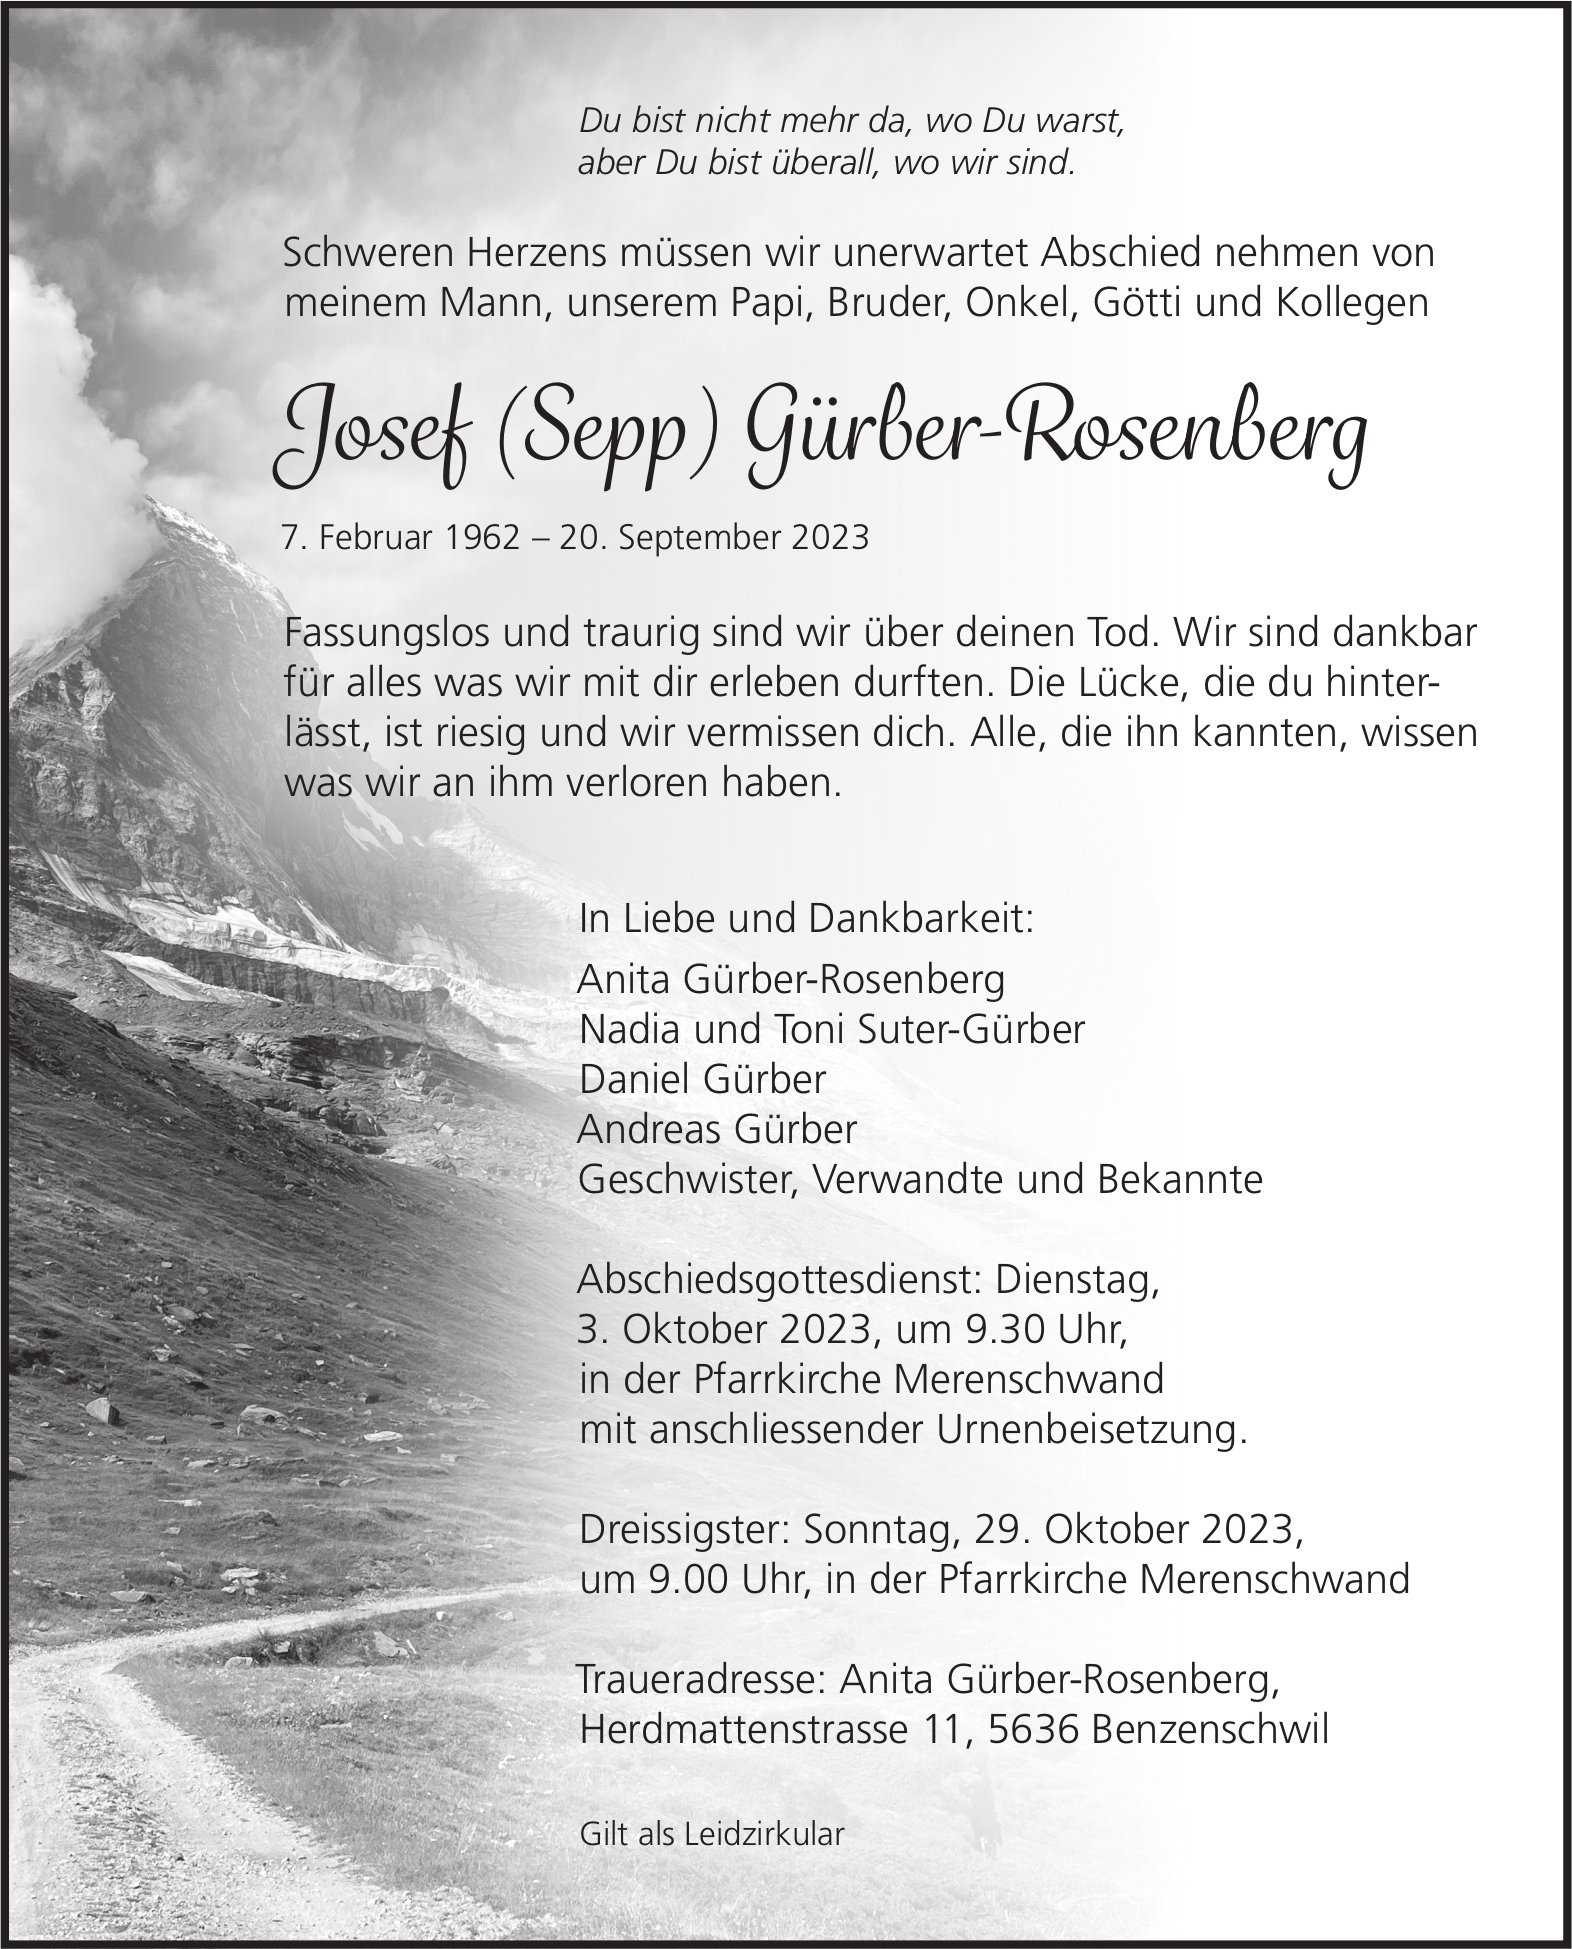 Gürber-Rosenberg Josef (Sepp), September 2023 / TA